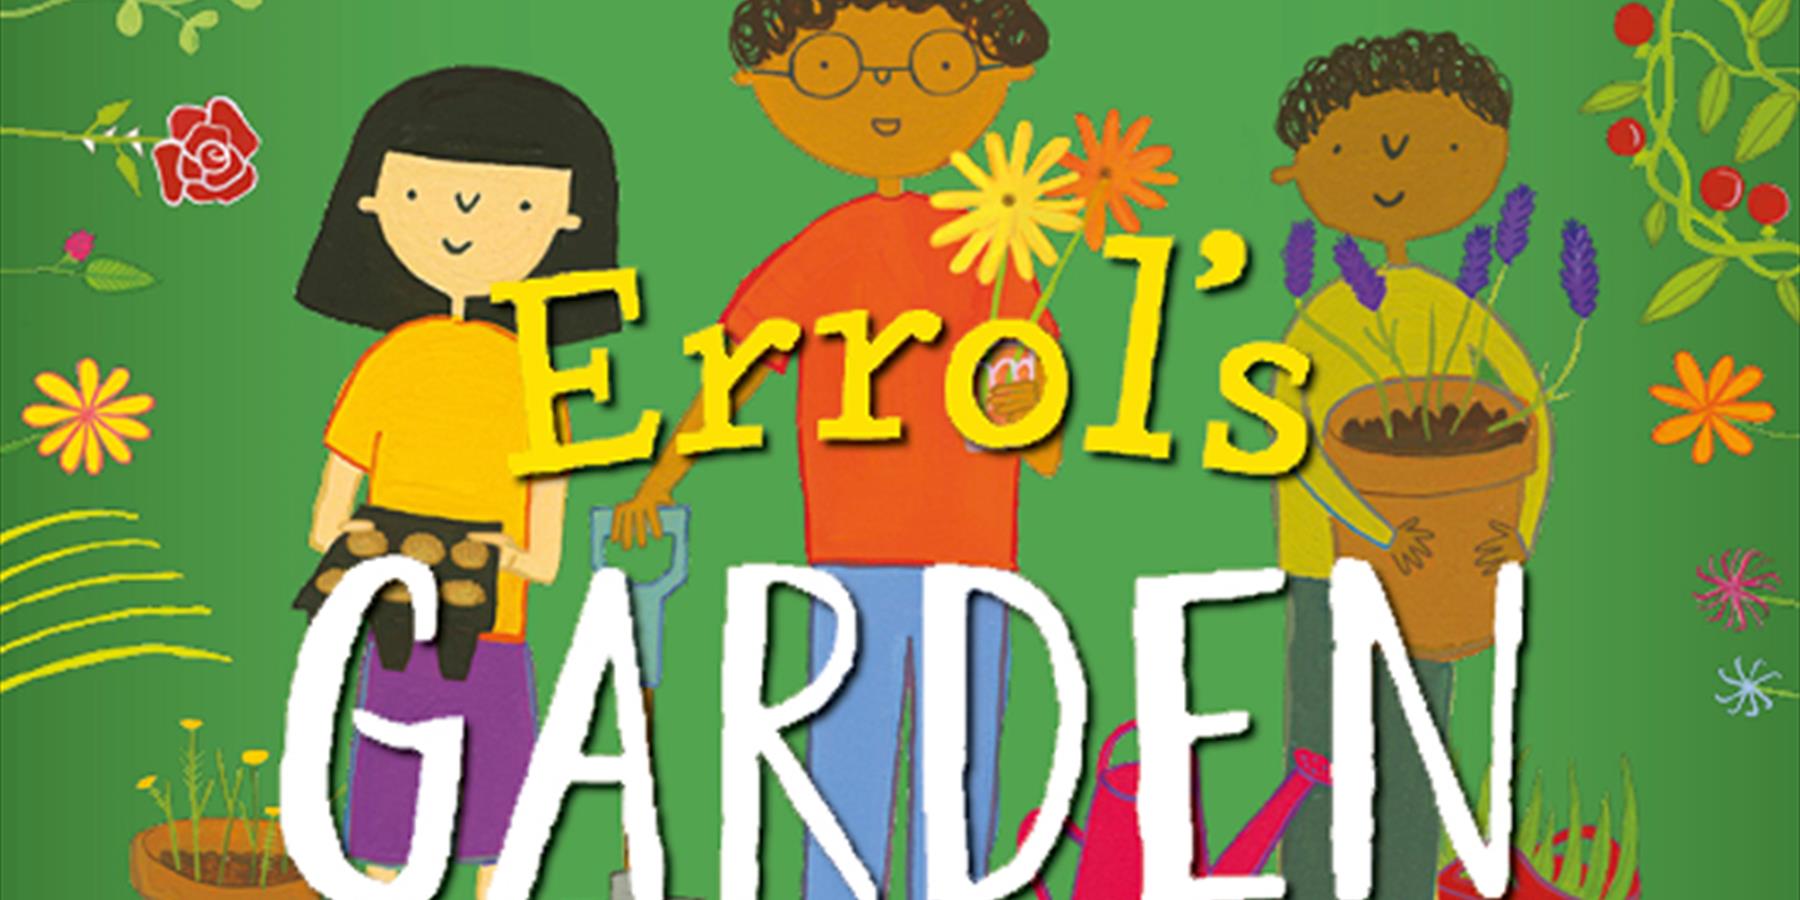 Errol's Garden poster